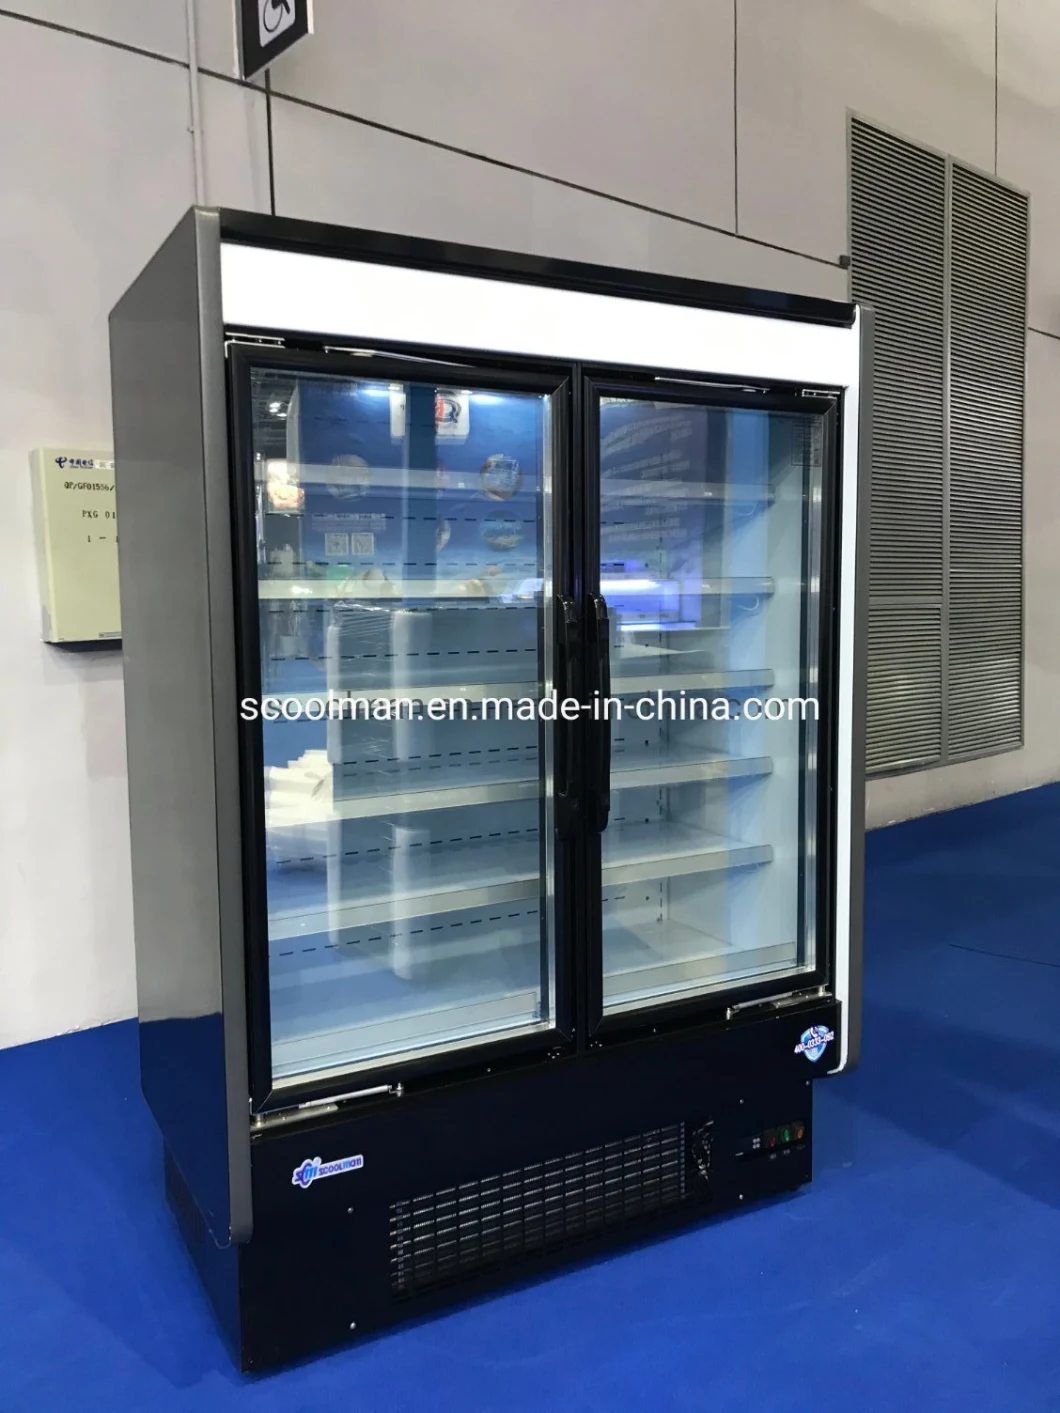 Glass 3 Door Beverage Display Freezer/Beer Display Cooler/Refrigerating Showcase